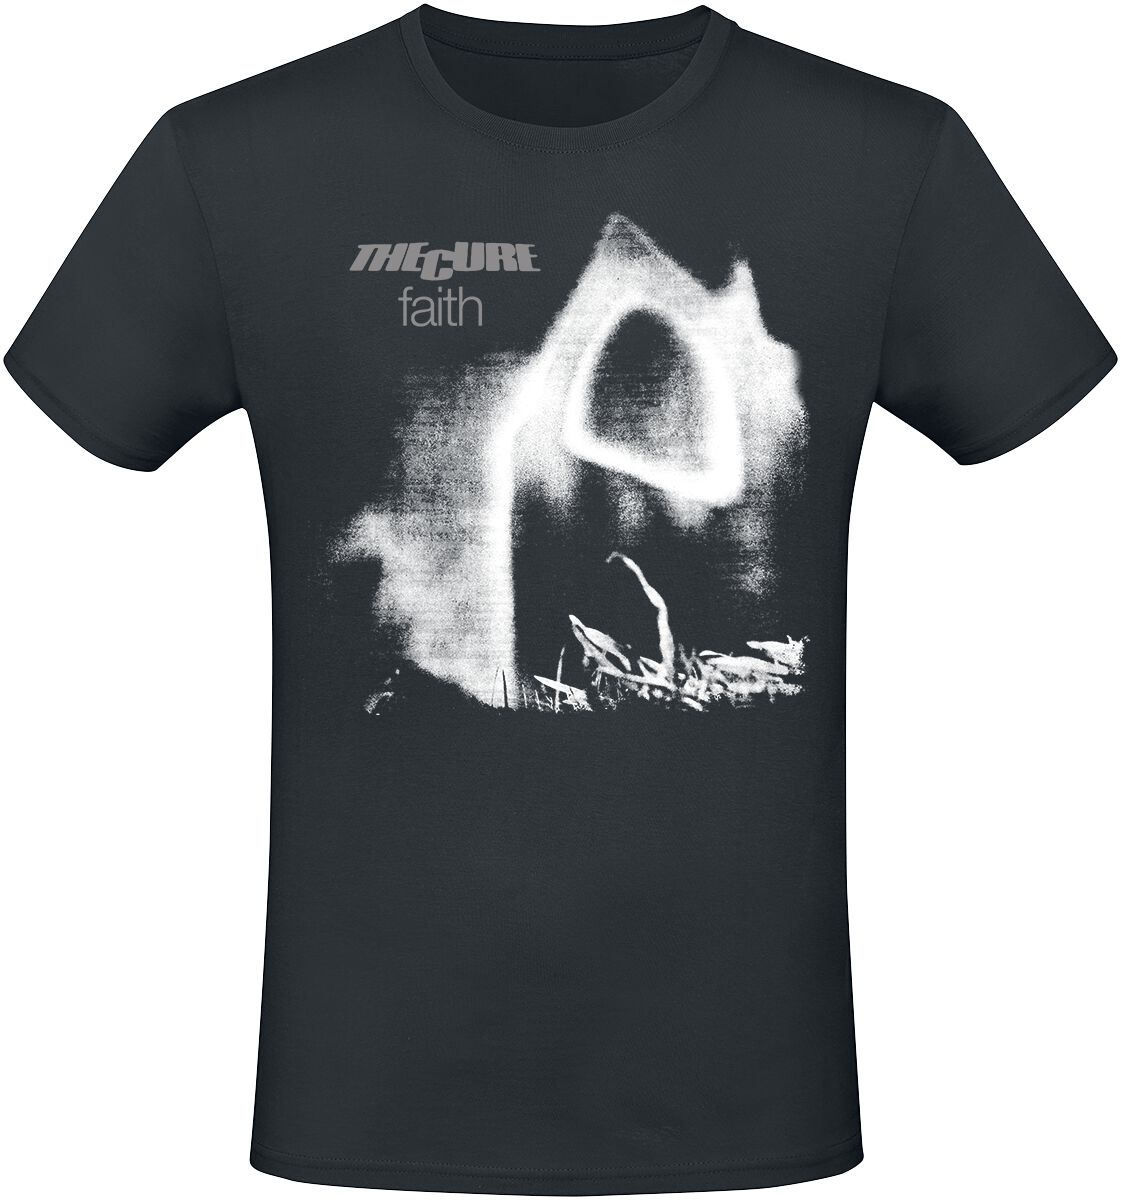 The Cure T-Shirt - Faith - L bis XL - für Männer - Größe XL - schwarz  - Lizenziertes Merchandise!